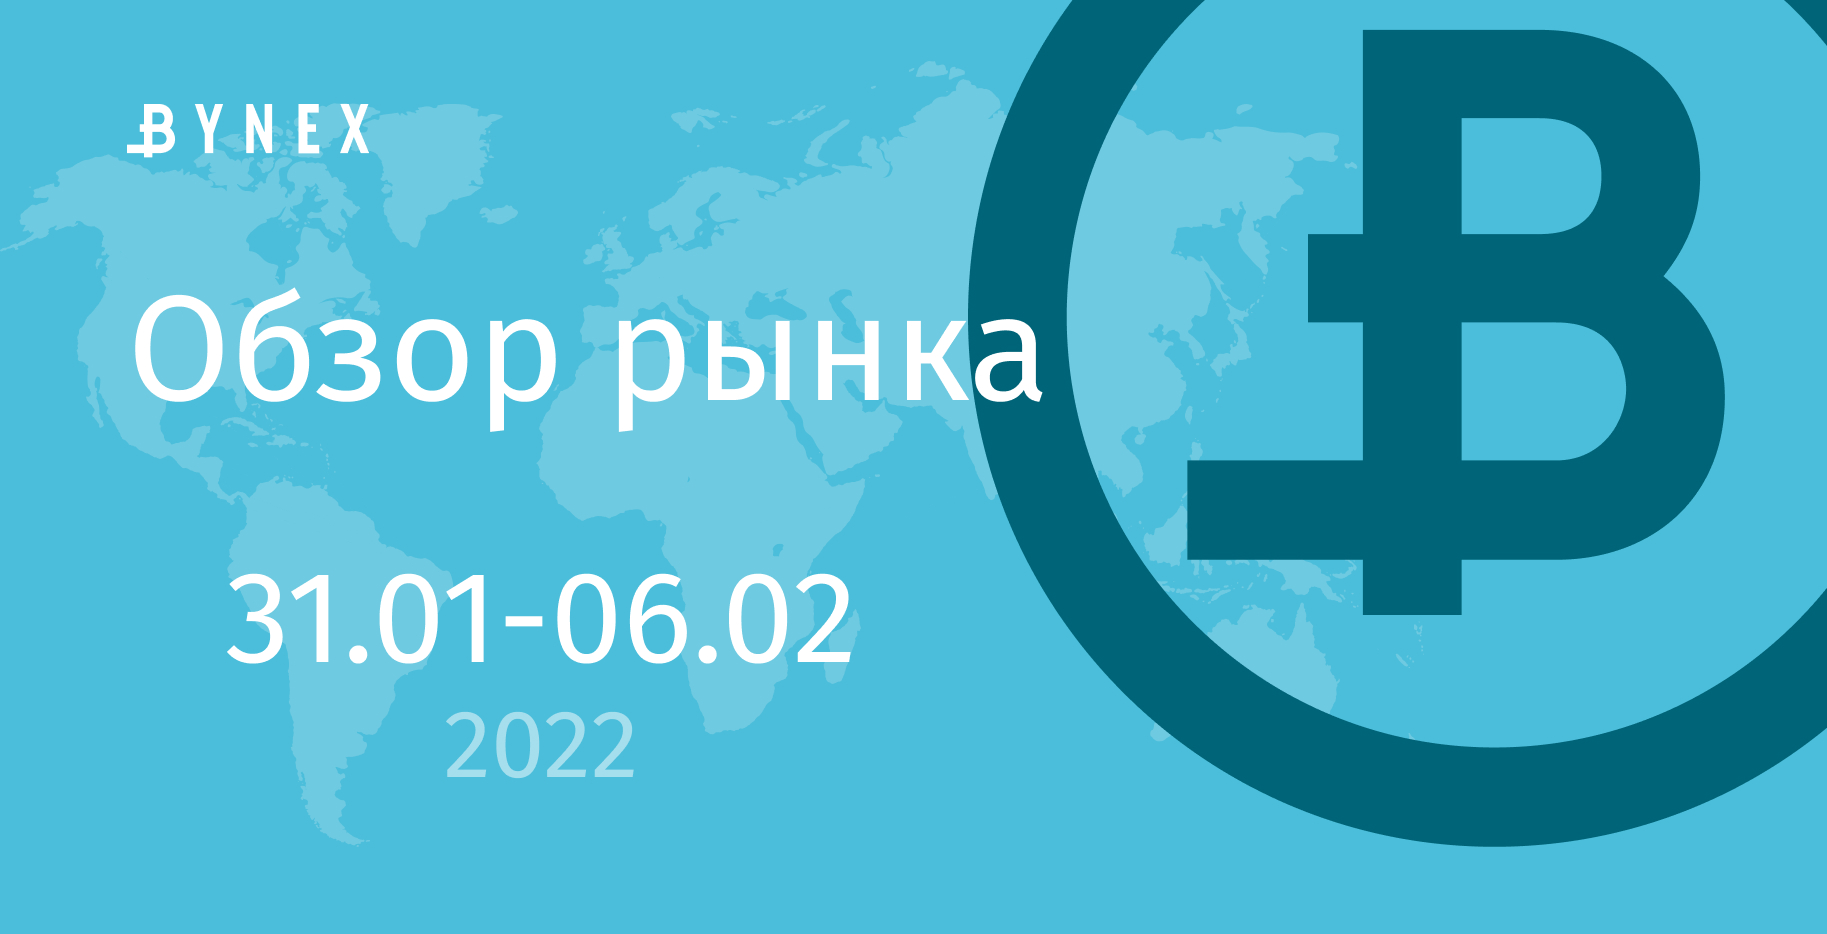 Bynex. Майнинг в России в 2022. Https://BYNEX.io/ отзывы.